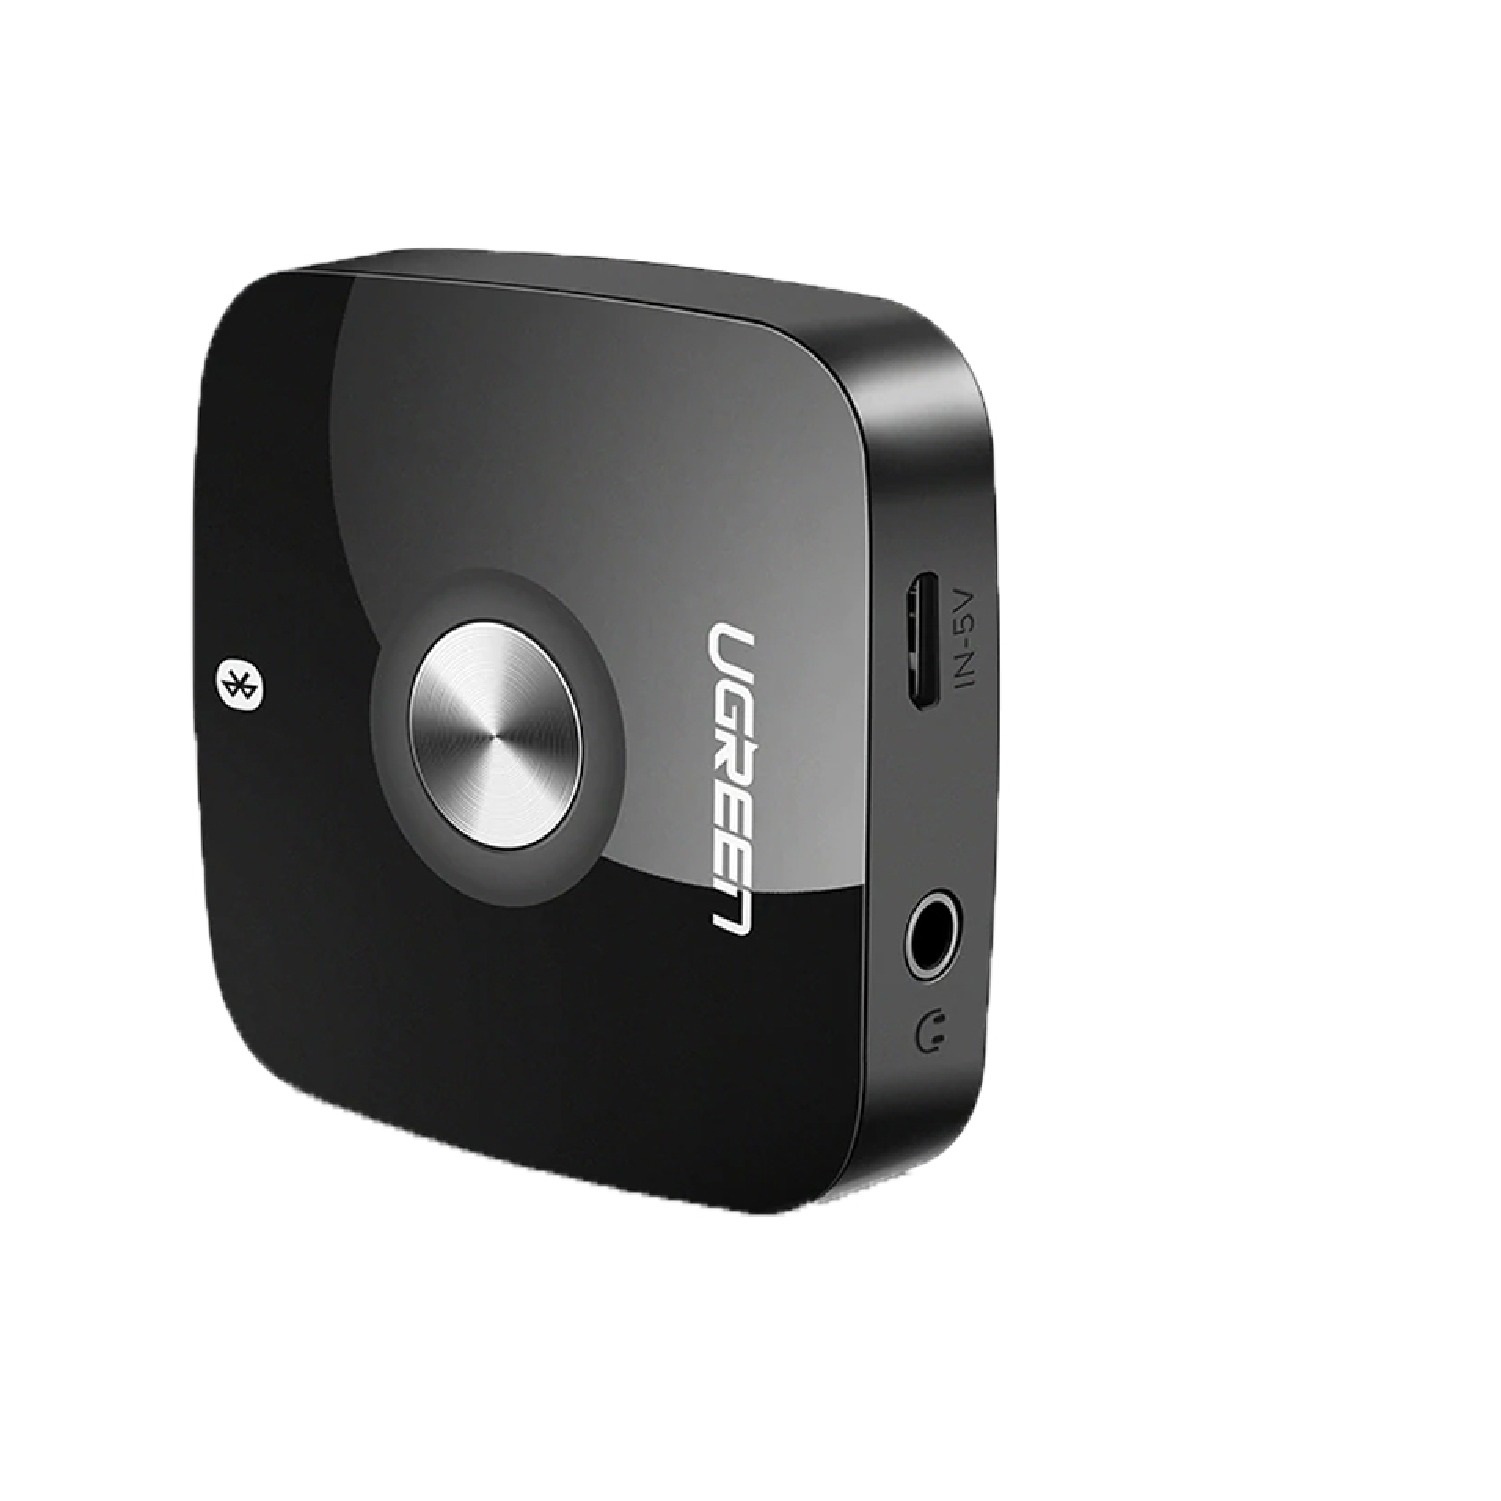 Thiết bị nhận âm thanh Bluetooth Receiver 4.2 cho loa, amply hỗ trợ cổng 3.5mm (CM105) Ugreen 40758